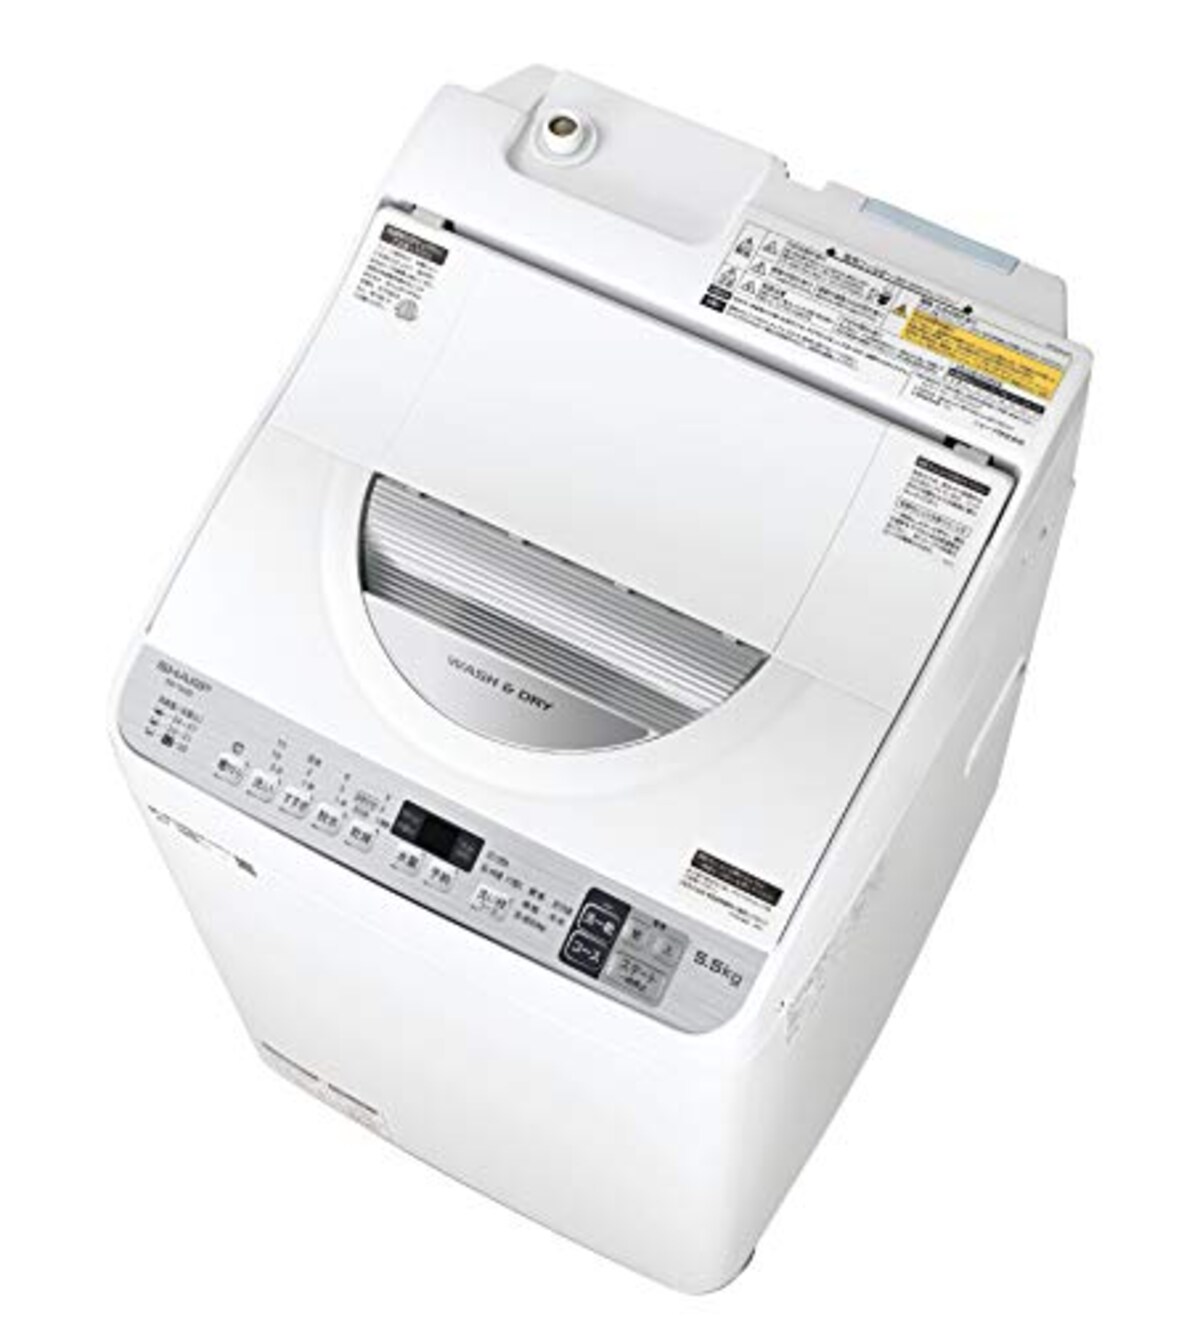 タテ型洗濯乾燥機 5.5kg画像